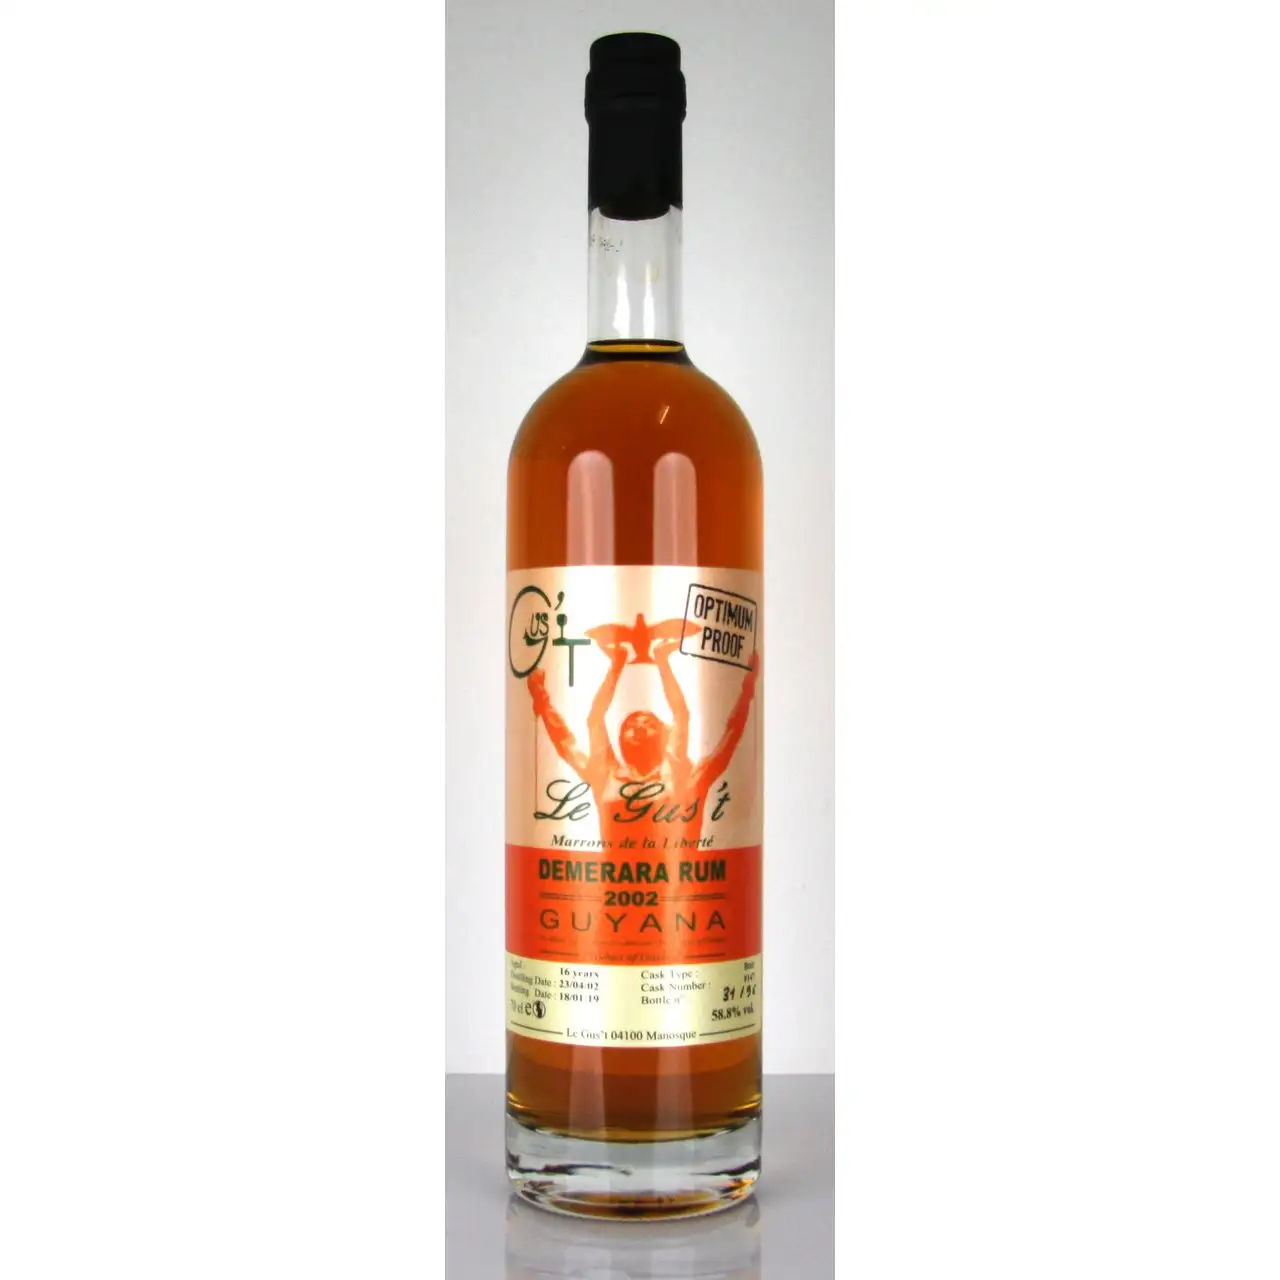 Image of the front of the bottle of the rum Marrons de la Liberté Optimum Proof